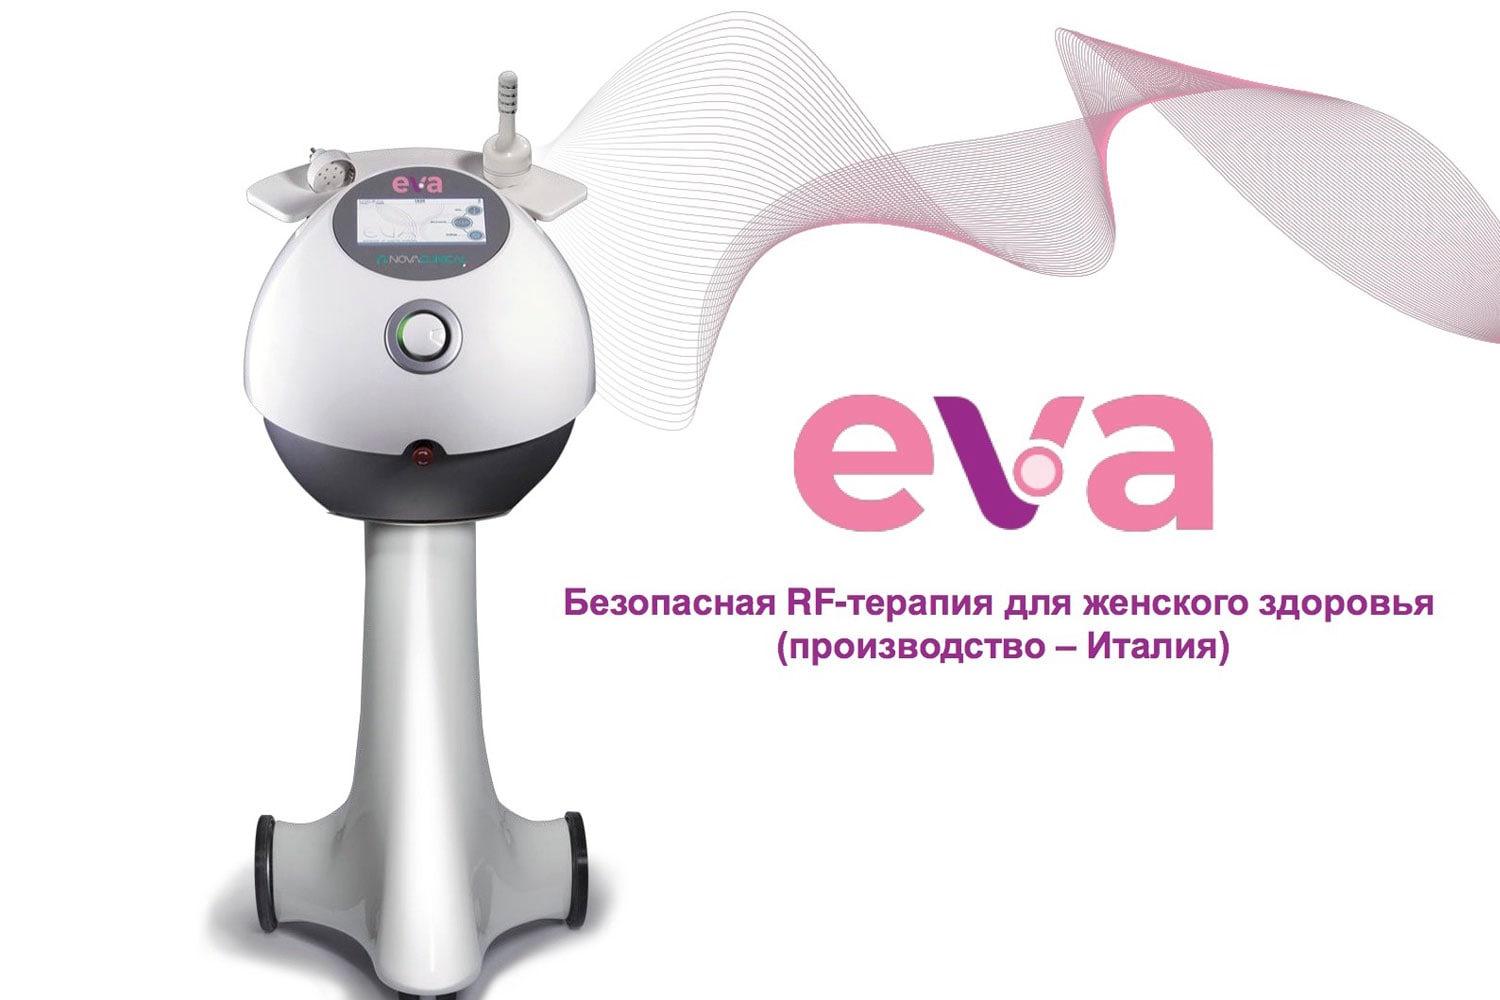 EVA (Enhancer of Vaginal Anatomy) — инновационный радиочастотный аппарат итальянской компании Novavision Group SpA